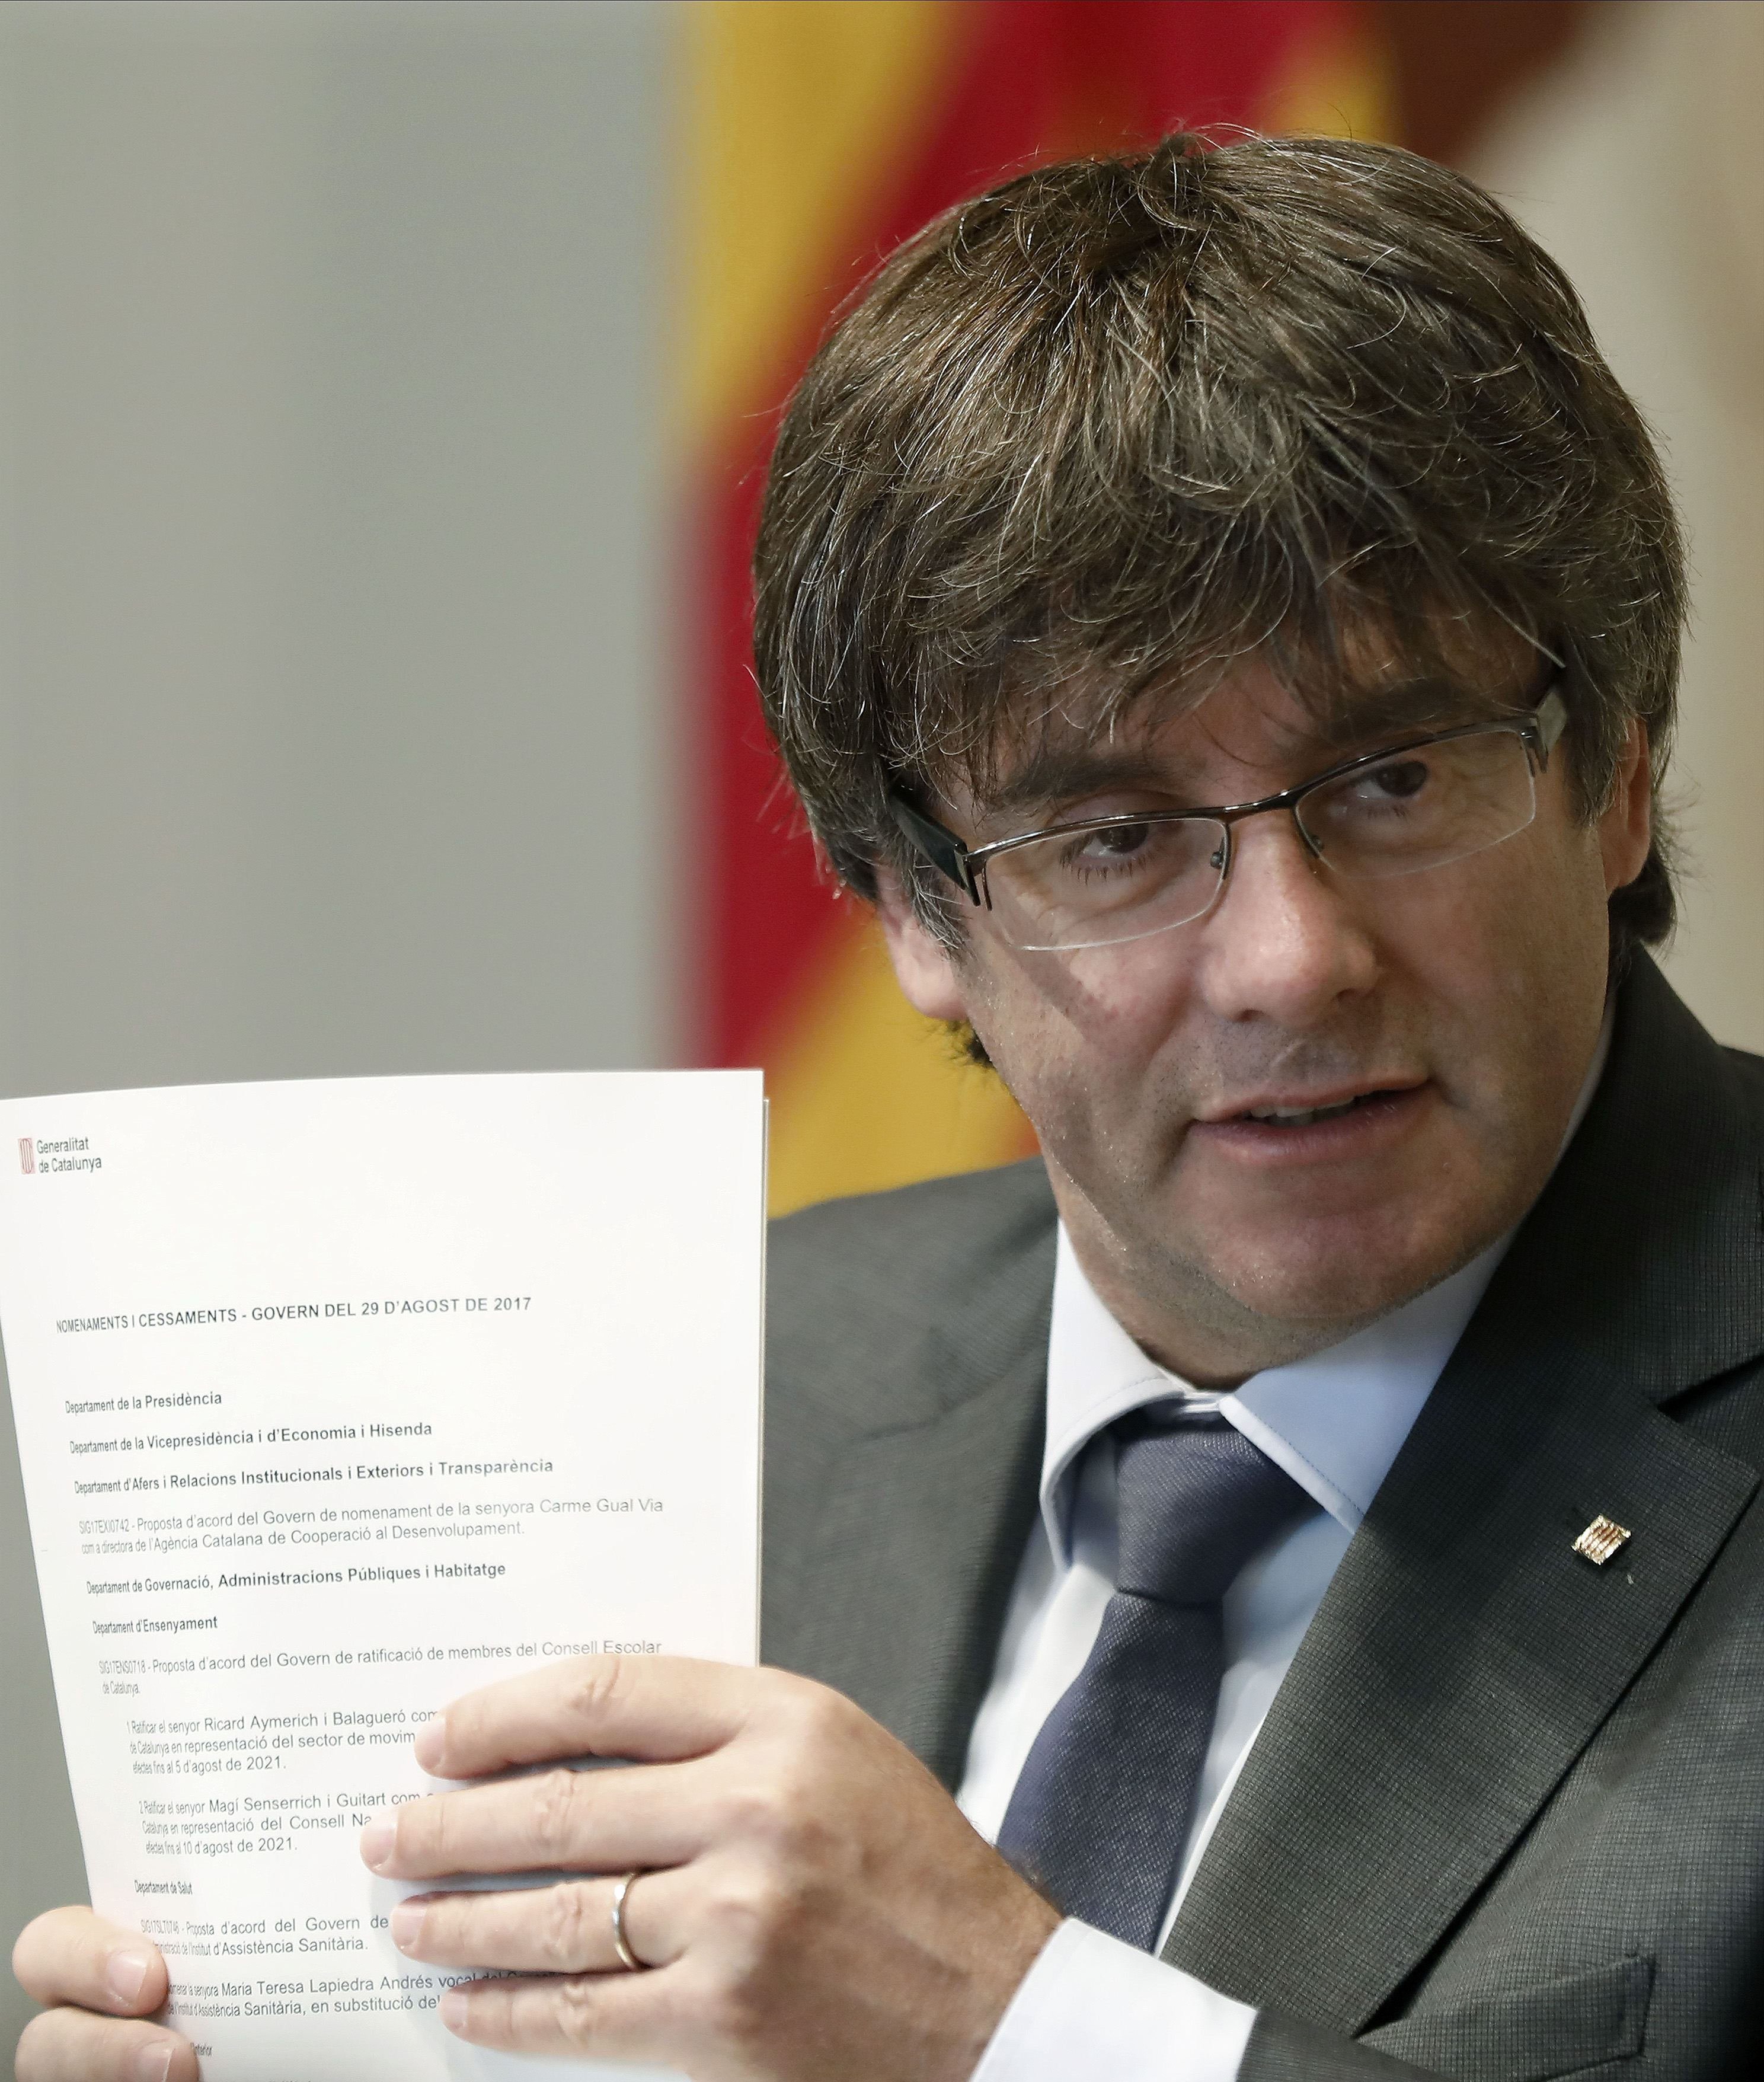 Puigdemont respon al dur discurs de Rajoy: "Hi ha en marxa l'operació provocació"